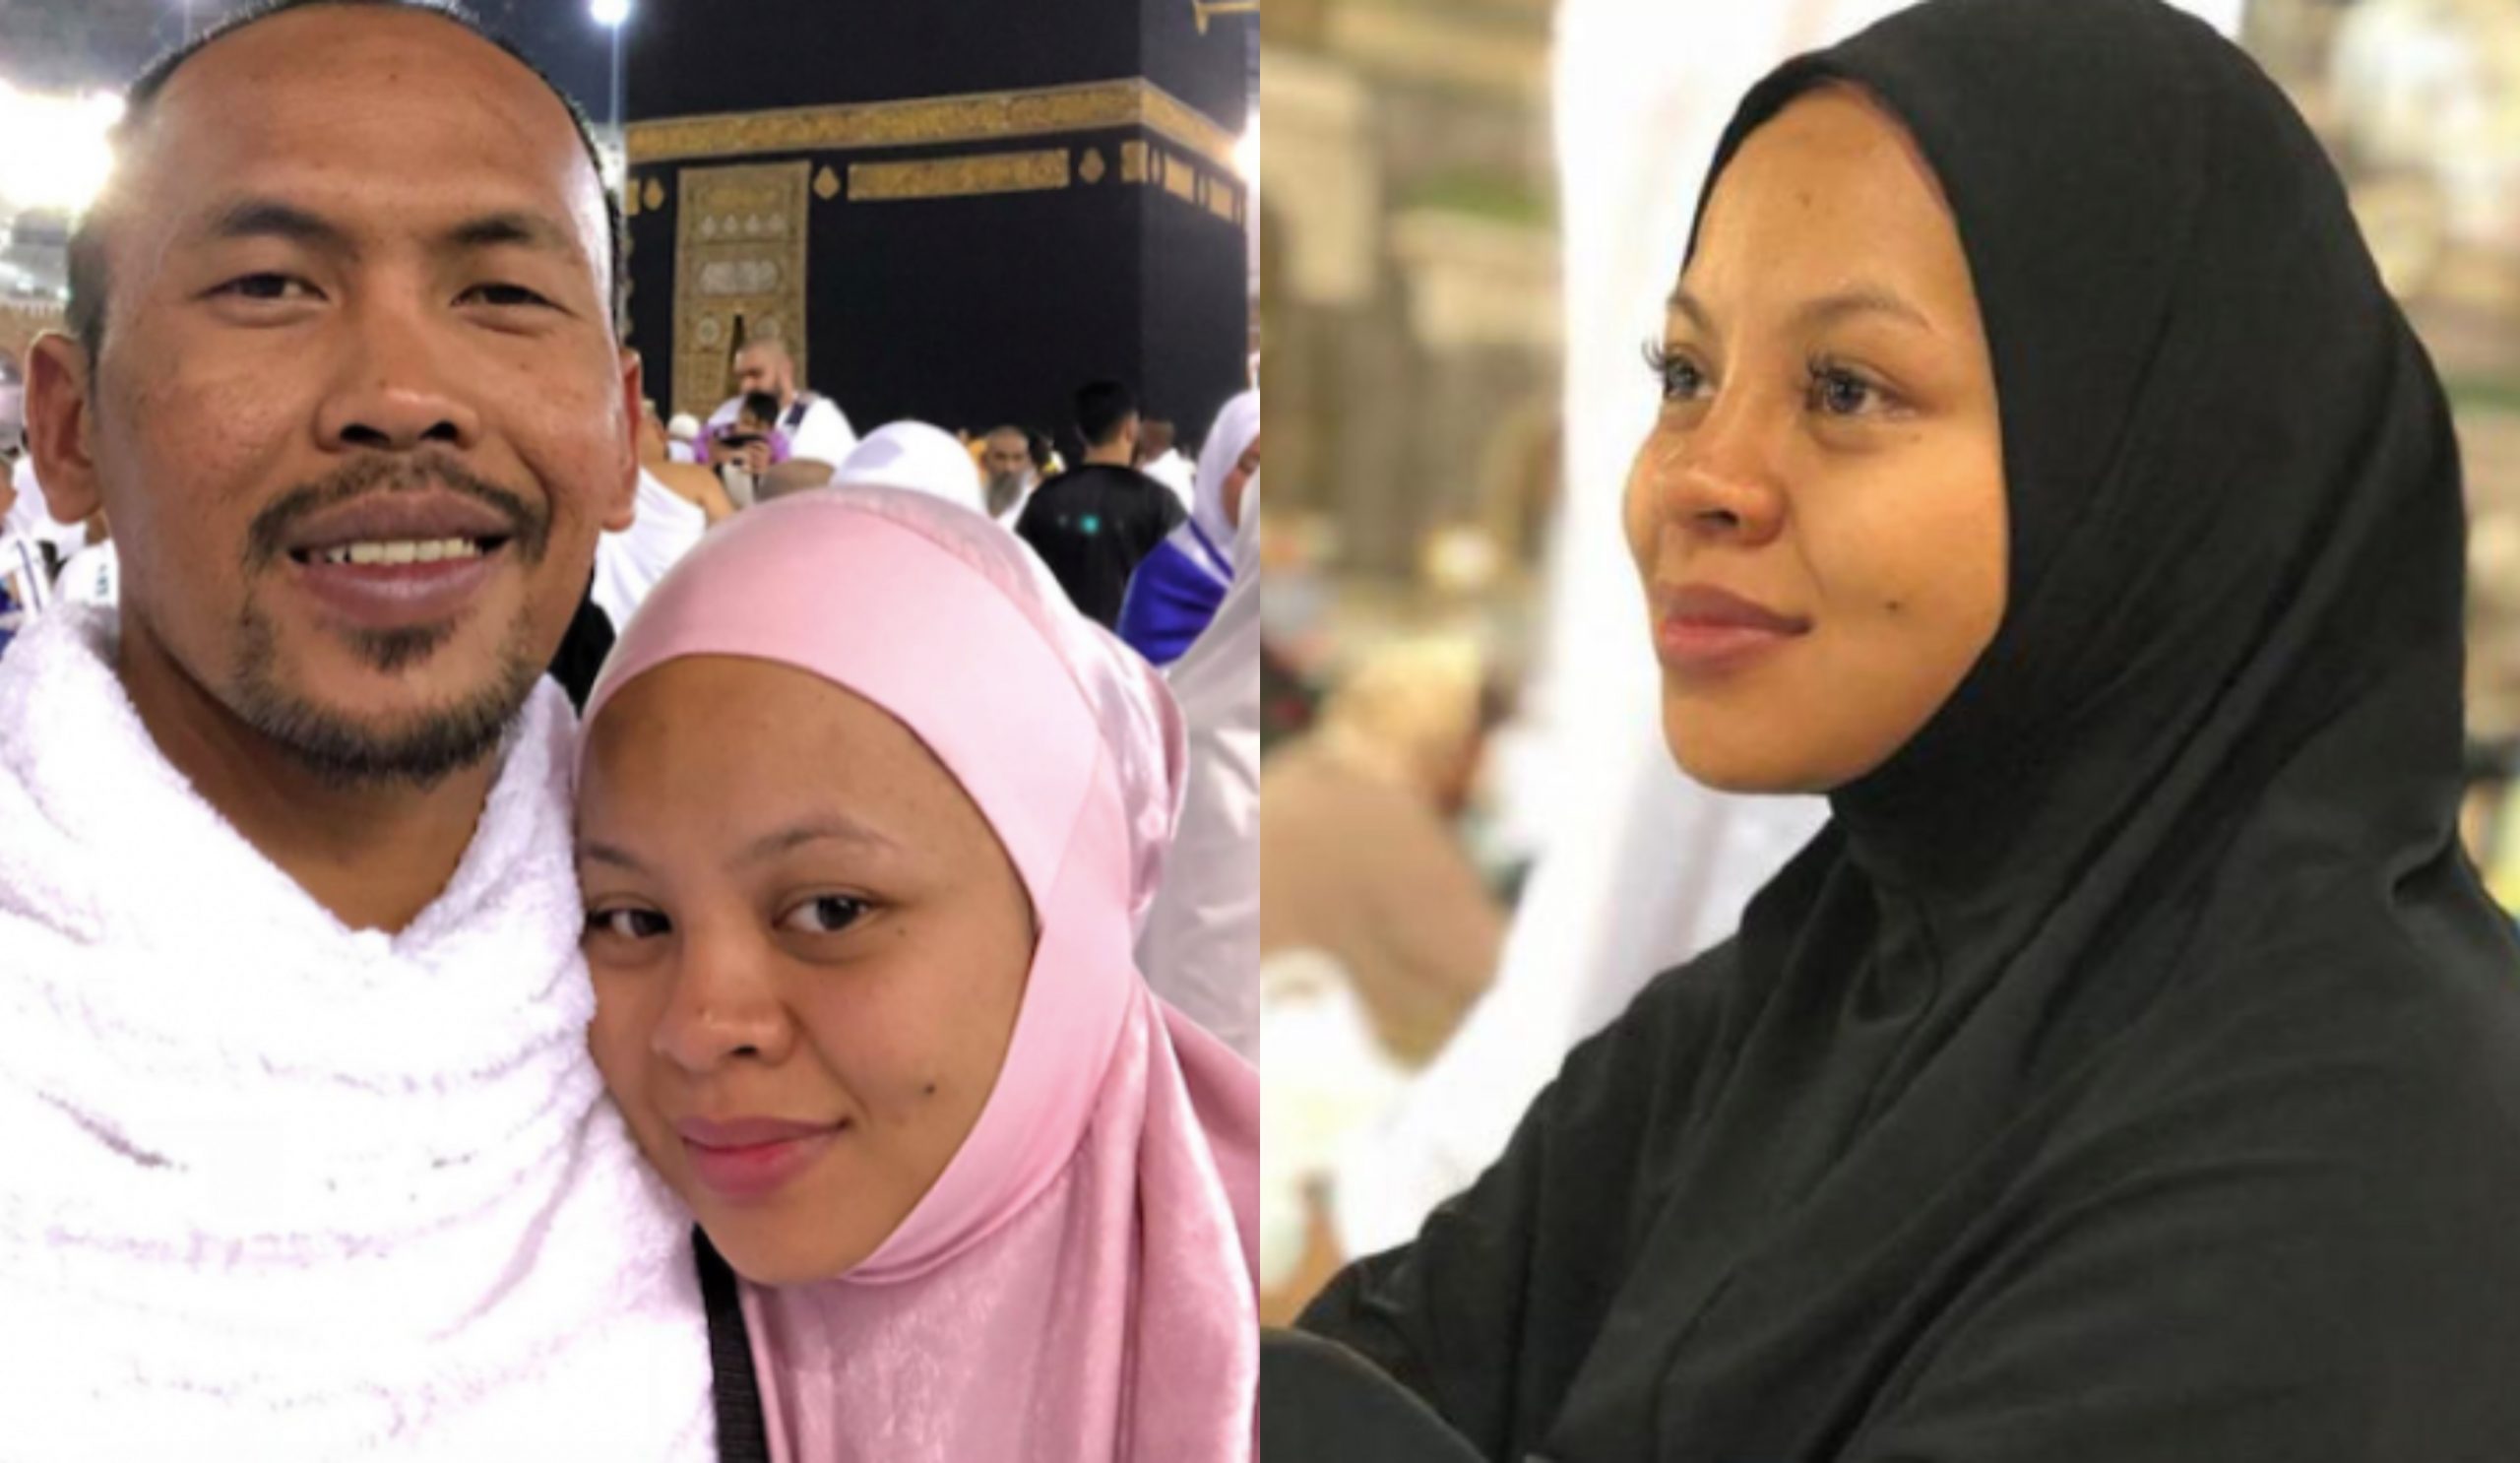 Shuib Mohon Padam Foto, Video Allahyarham Siti Sarah Yang Tidak Menutup Aurat